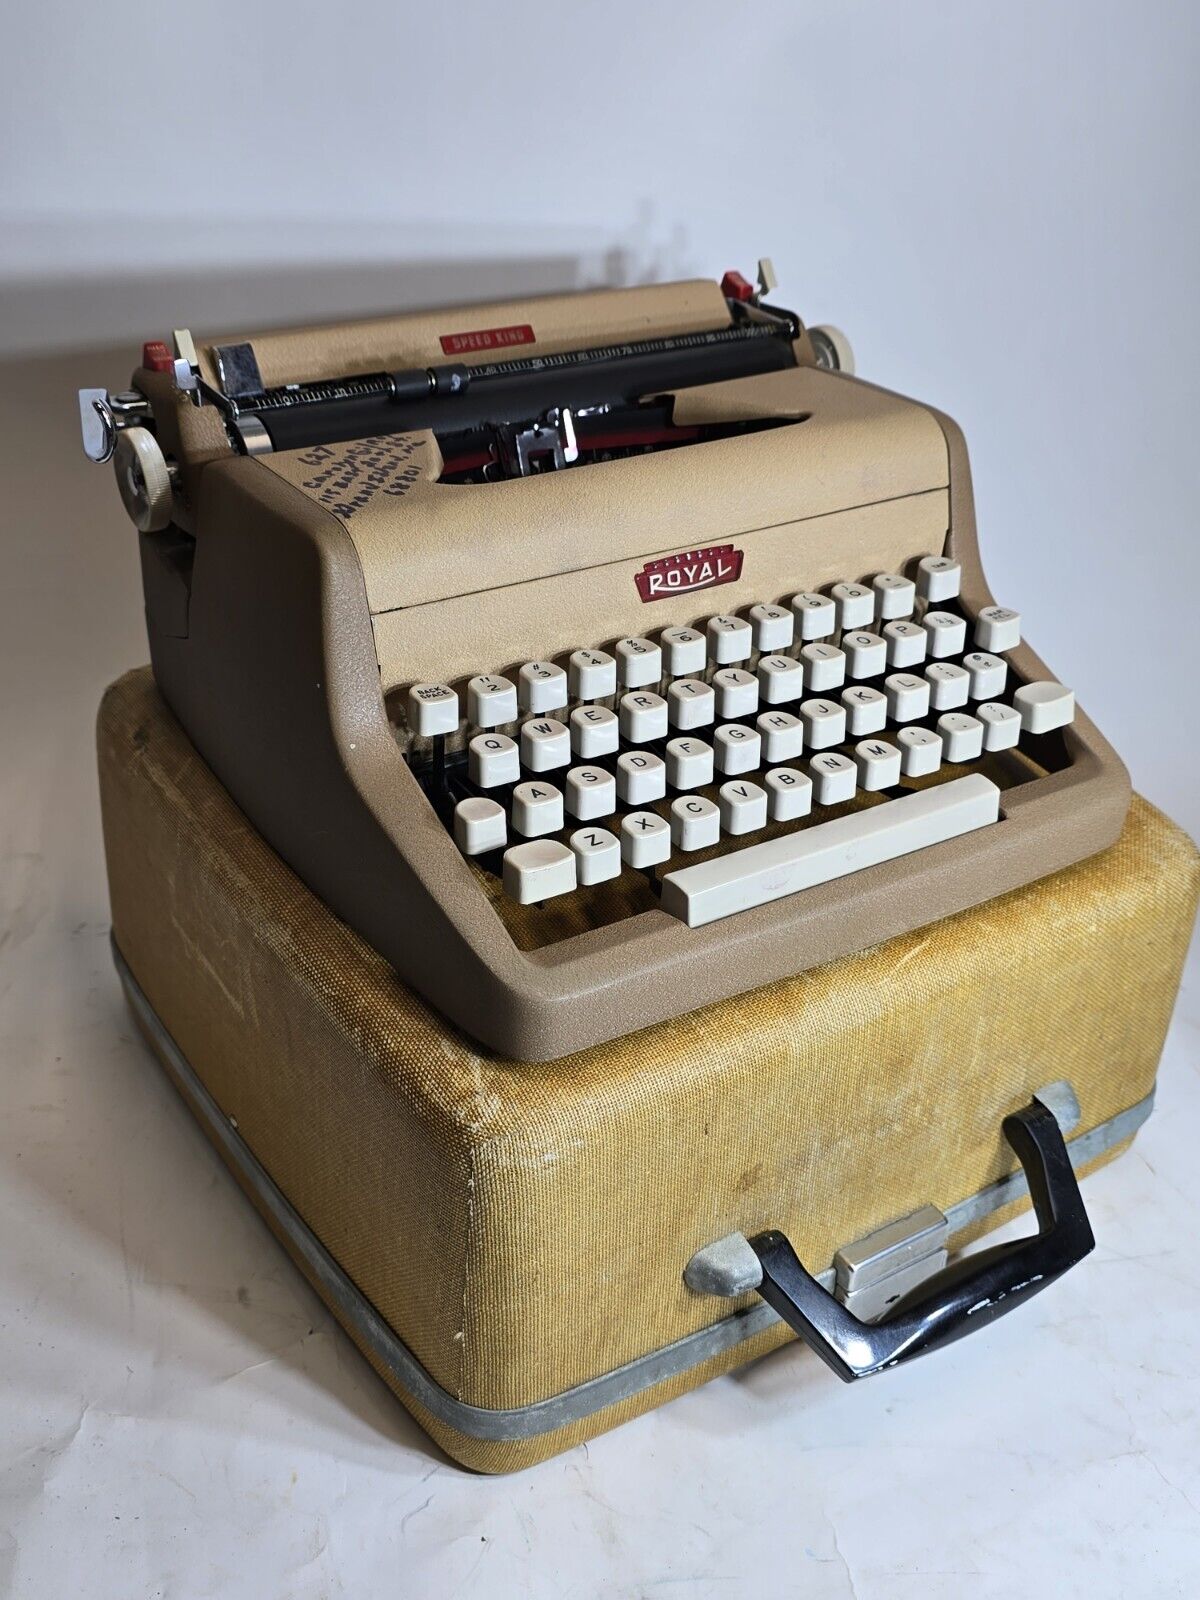 1958 Royal Speed King Double Tan Working Portable Typewriter with Locking Case